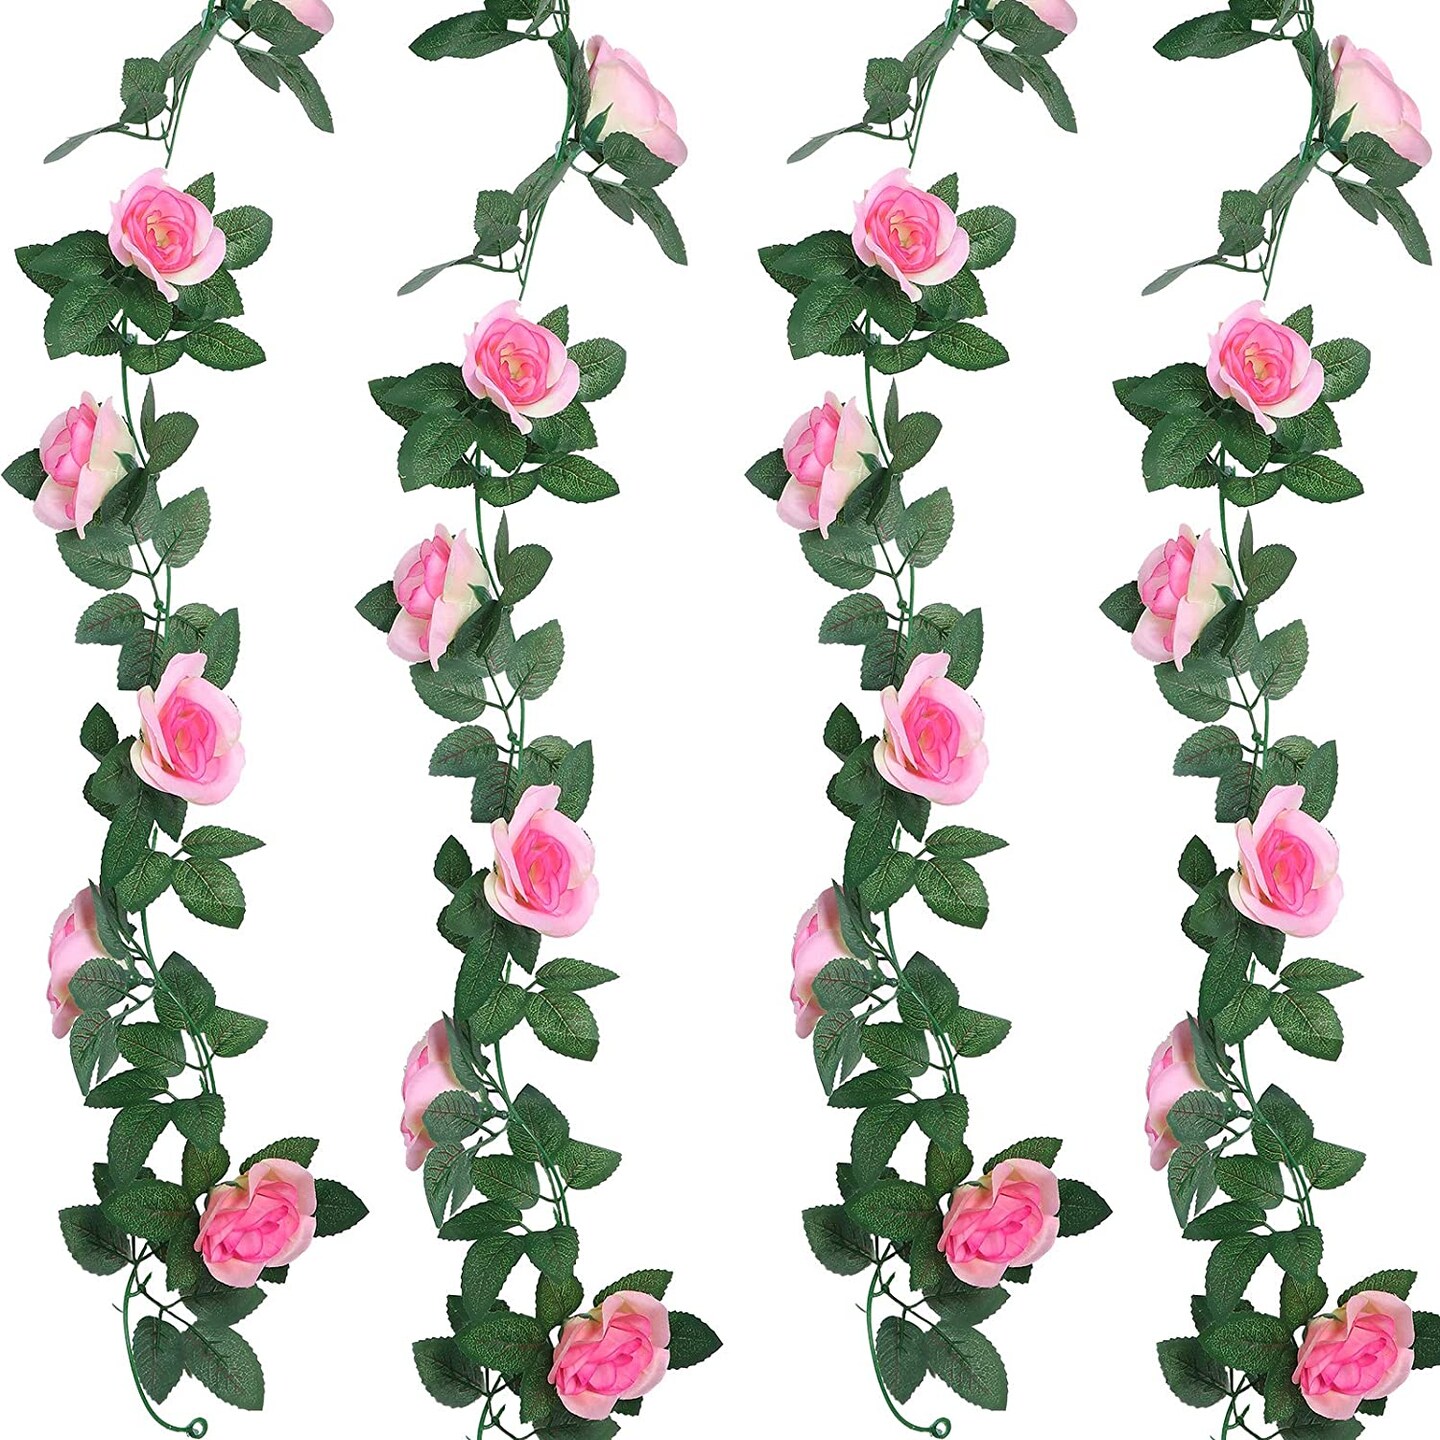 Kitcheniva Artificial Rose Vine Flowers Party Decor 3 Pcs